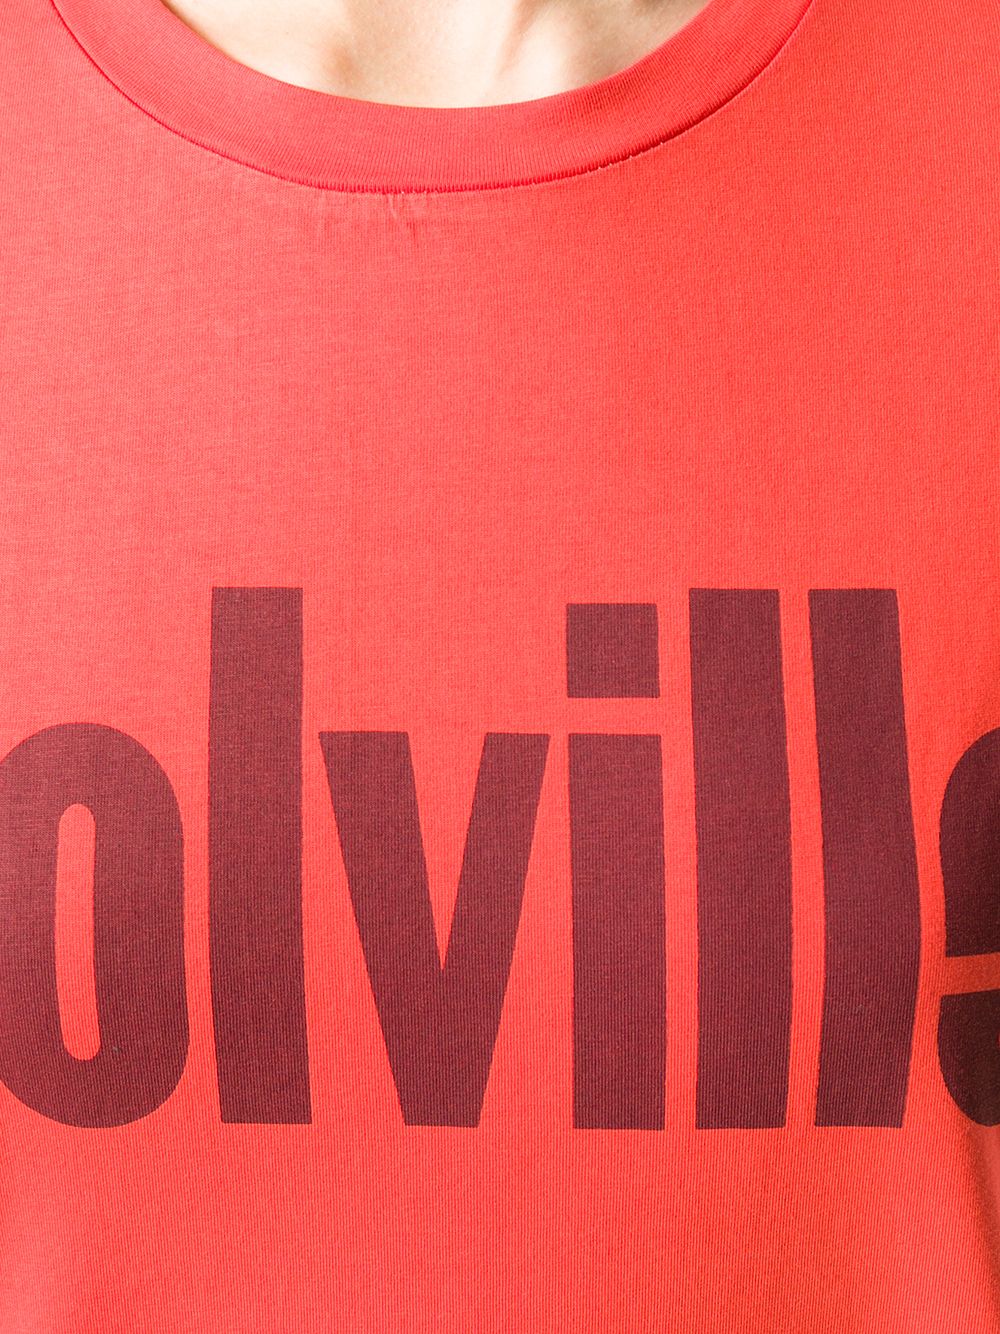 фото Colville футболка с логотипом